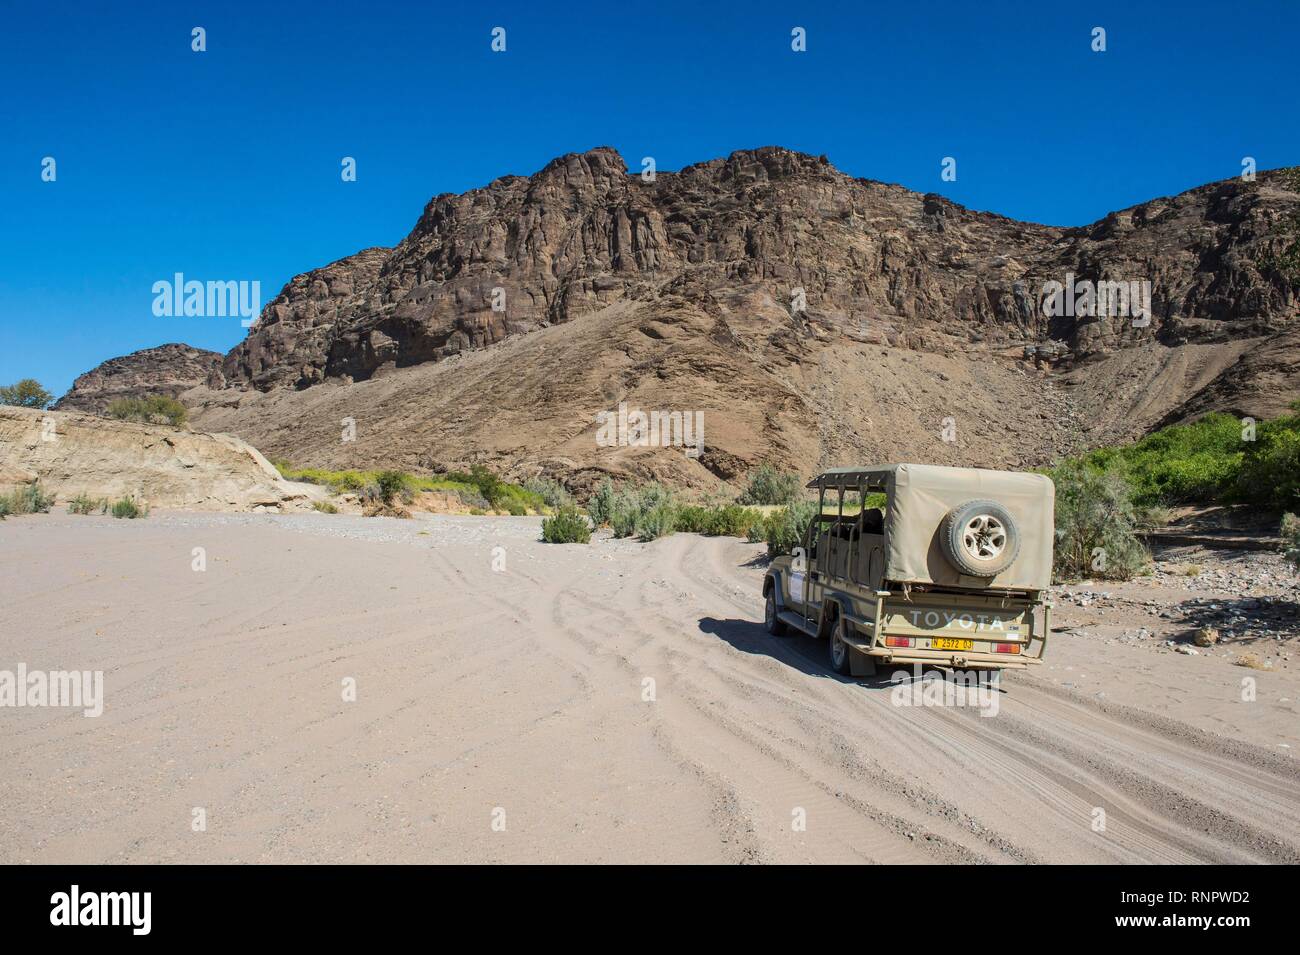 Jeep touristique conduisant par le sable profond à la recherche de safari, Khurab Réserver, le nord de la Namibie, Namibie Banque D'Images